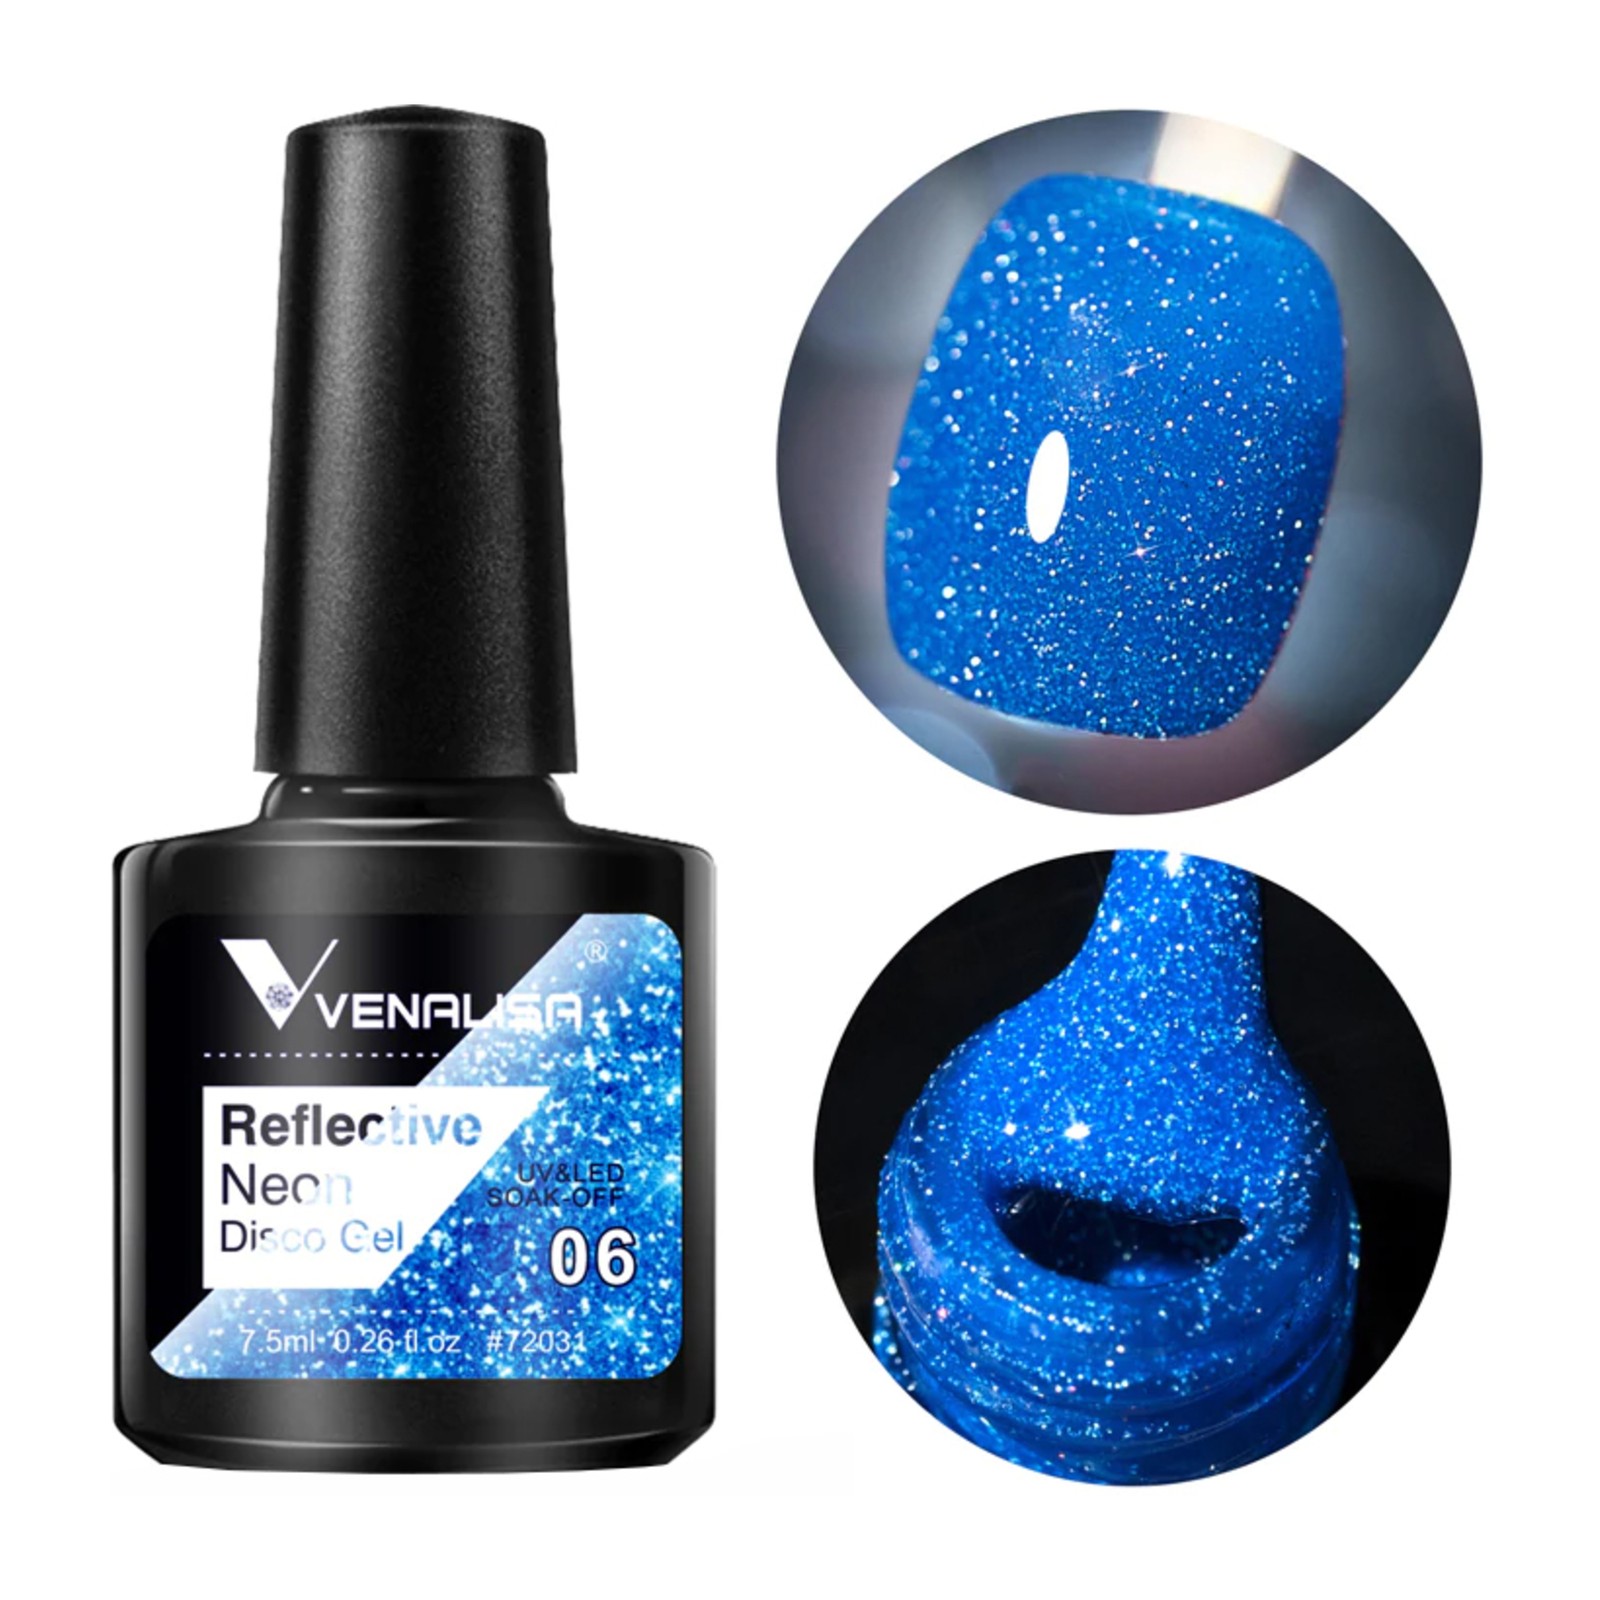 Venalisa -  Odsevni neonski disko gel -  BD06